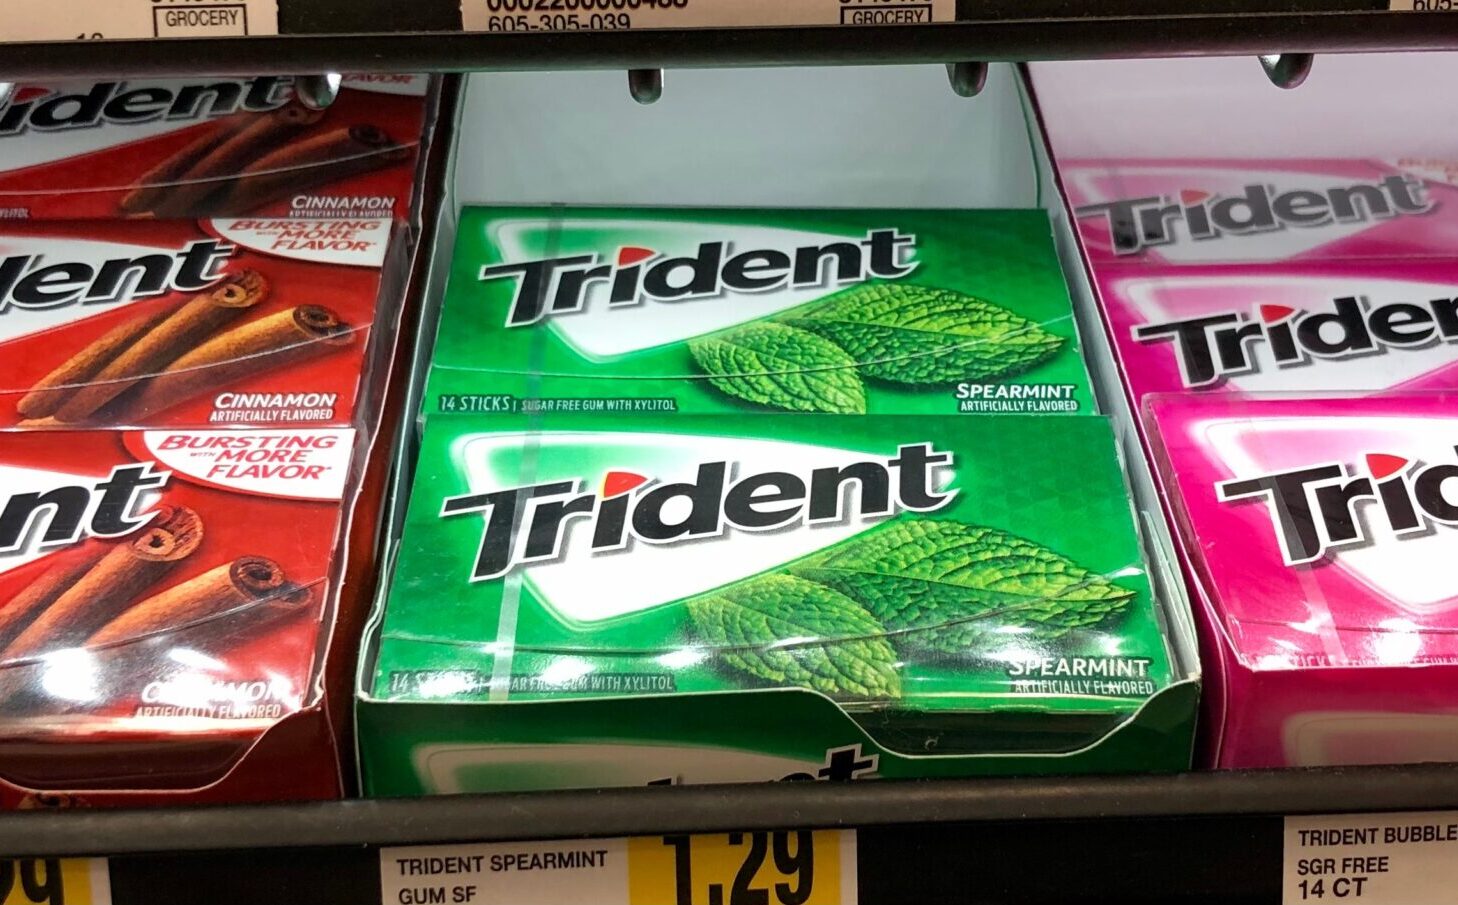 trident gum spokesperson